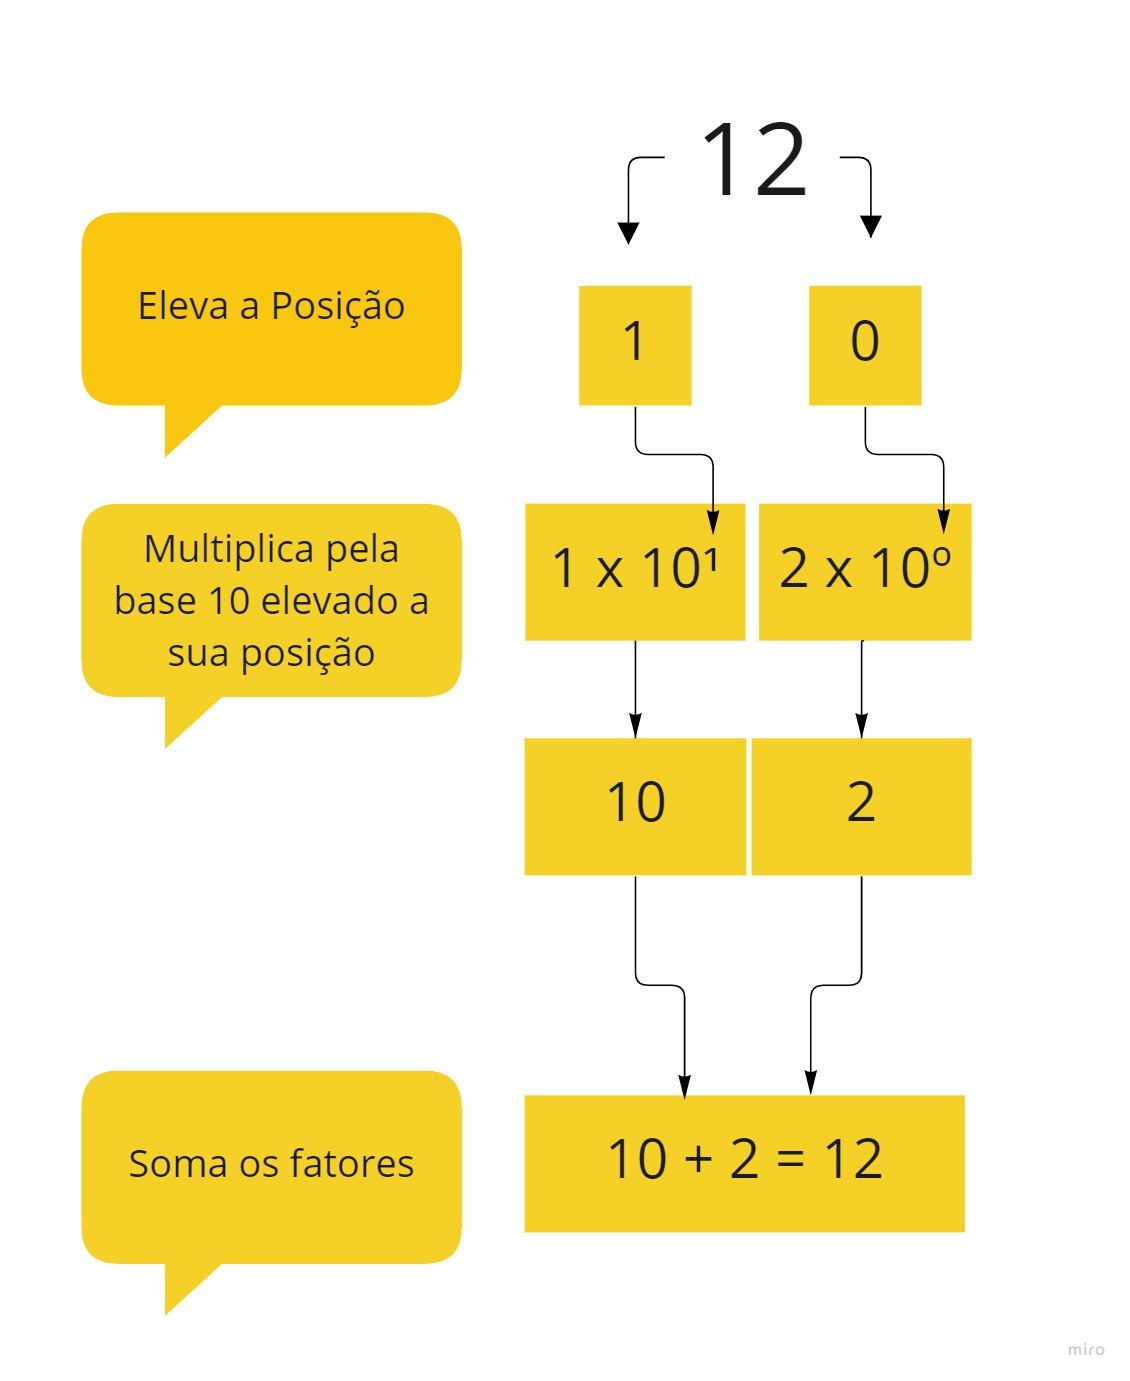 Imagem organizada em organograma cascata mostrando que o expoente da base 10 é equivalente a posição em que o número 12 se encontra. Nesse caso, contamos da esquerda para a direita e a partir do algarismo 0, e para 12, o número 2 está na posição 0 e o número 1 está na posição 1.